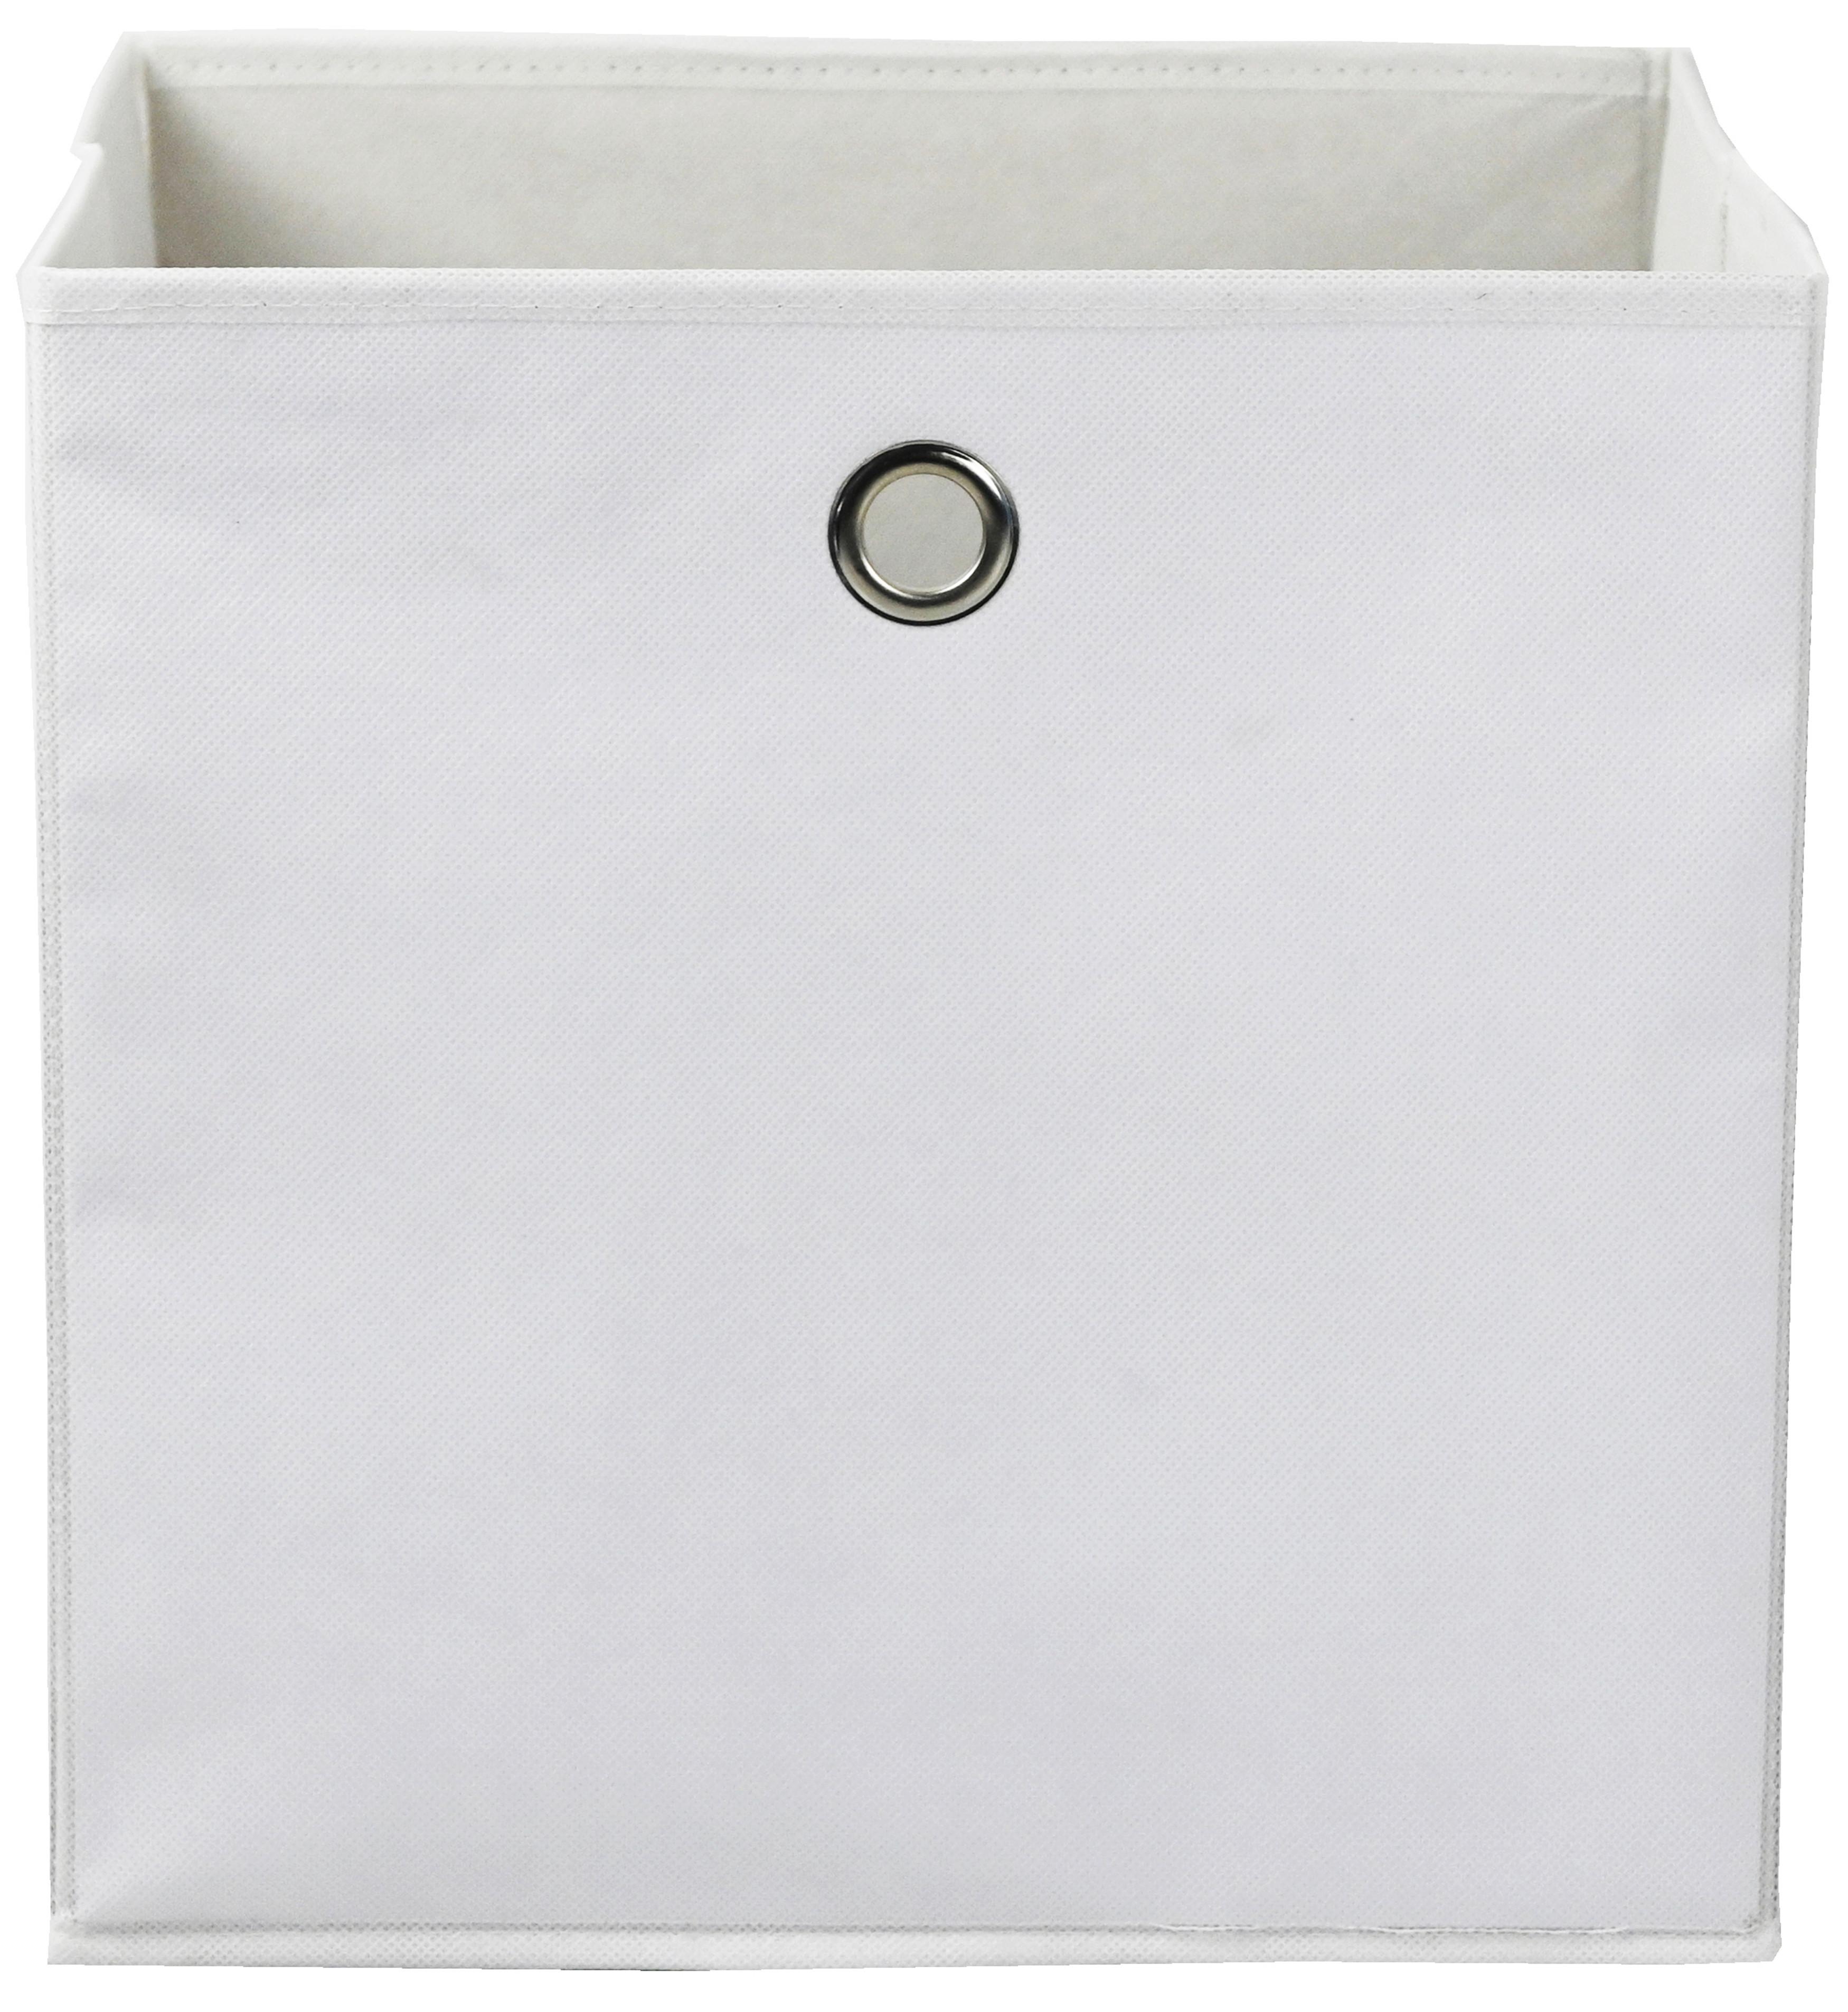 Faltbox Fibi in Weiß - Weiß, KONVENTIONELL, Karton/Textil (30/30/30cm) - Modern Living